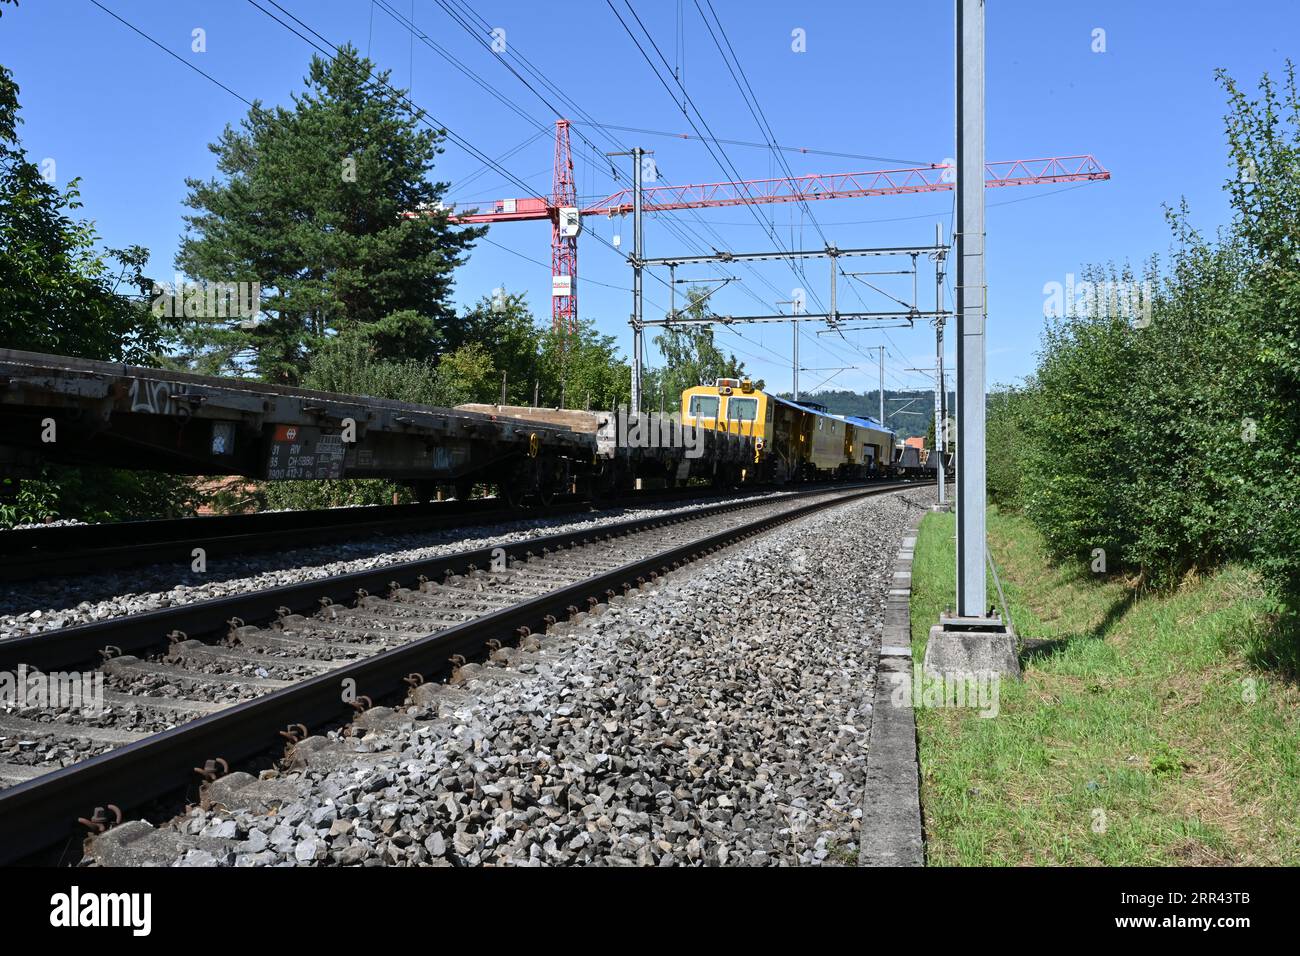 Un train de marchandises avec des wagons chargés de traverses en béton se dresse sur les rails menant à la gare d'Urdorf en Suisse. Banque D'Images